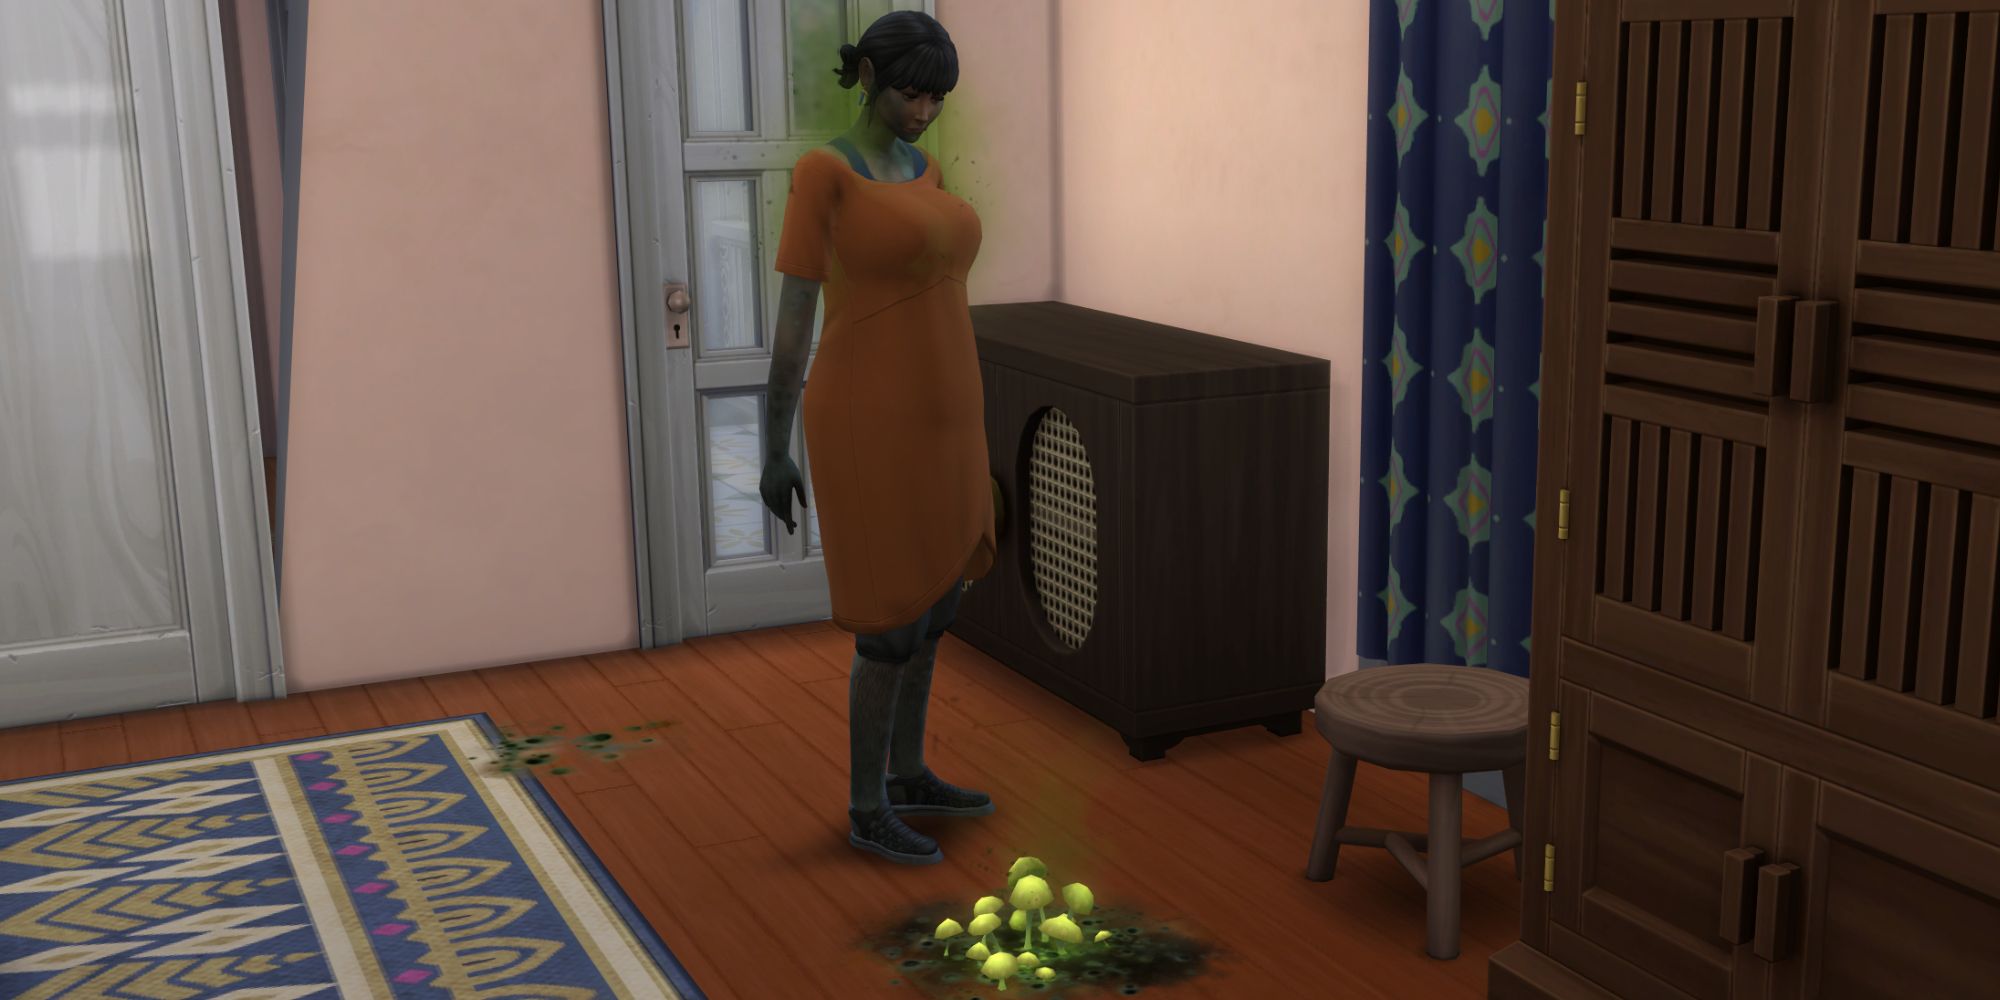 Подробнее о статье The Sims 4: В аренду — Как избавиться от плесени